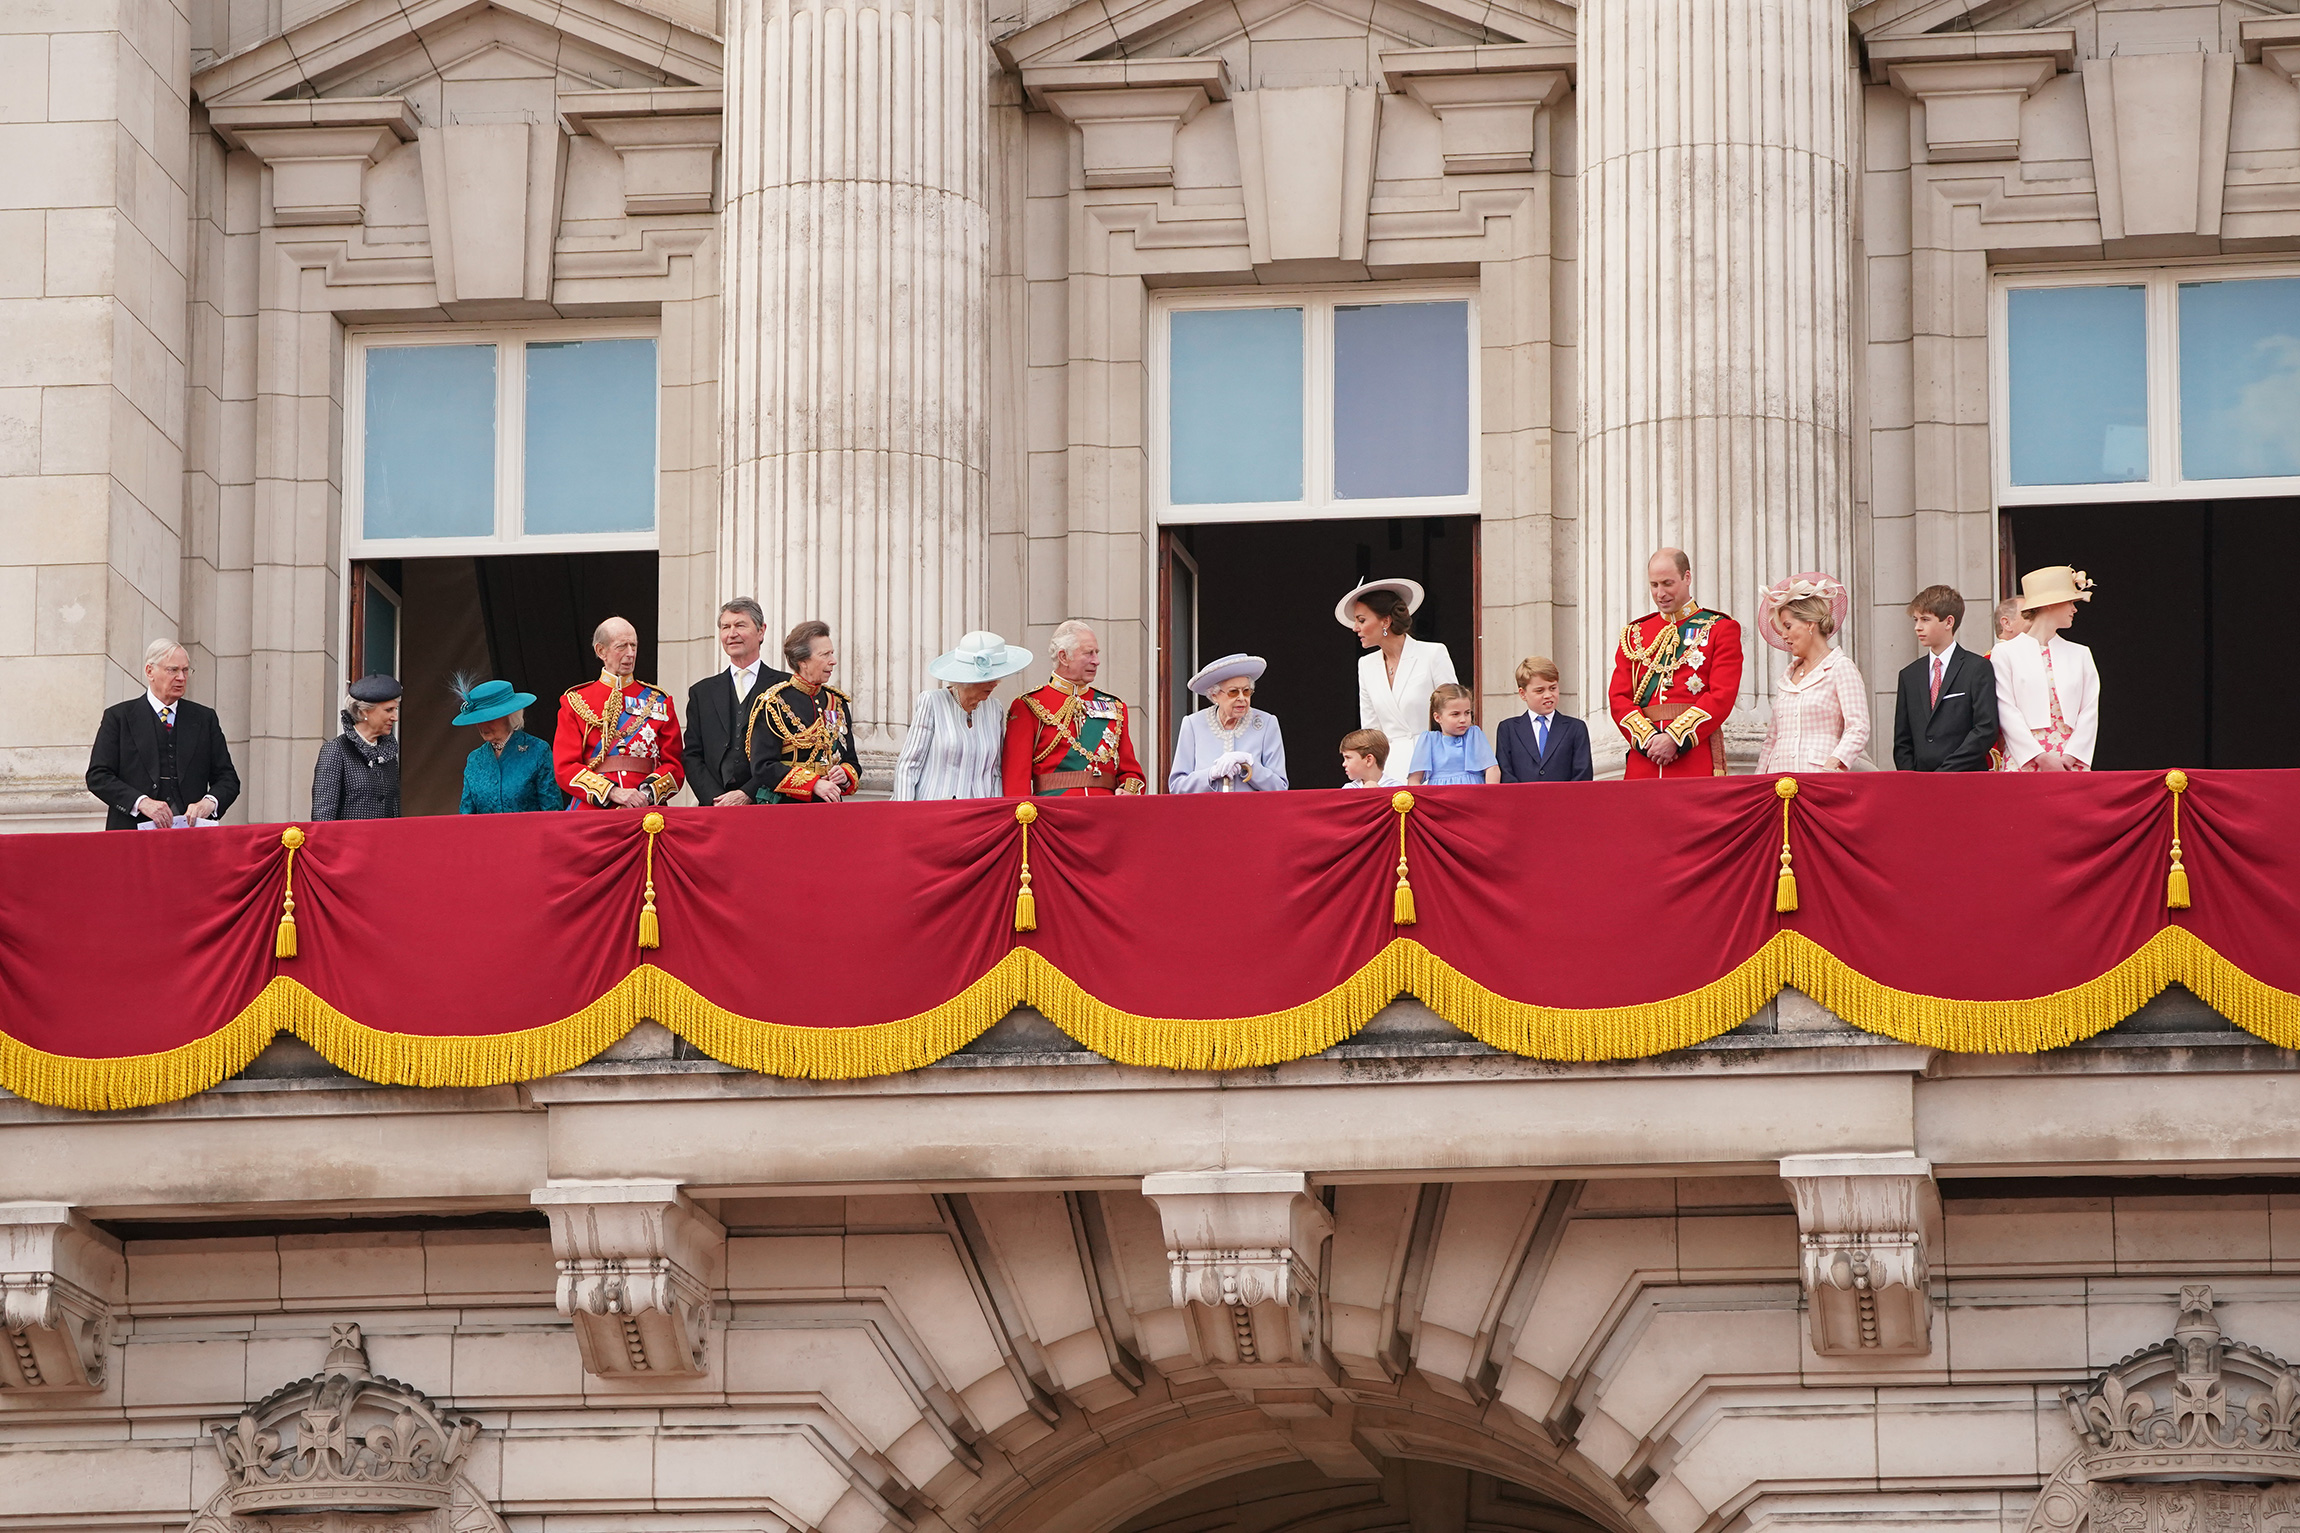 Члены королевской семьи на балконе Букингемского дворца во время парада, 2 июня. Слева направо: четвертый слева принц Эдвард (герцог Кентский), Тимоти Лоренс (муж принцессы Анны) и принцесса Анна, Камилла (герцогиня Корнуолльская), принц Чарльз, королева Елизавета II, принц Луи, Кэтрин (герцогиня Кембриджская), принцесса Шарлотта, принц Джордж, принц Уильям, Софи (графиня Уэссекская), Джеймс (виконт Северн), леди Луиза Виндзор, позади нее&nbsp;&mdash; принц Эдвард (граф Уэссекский)